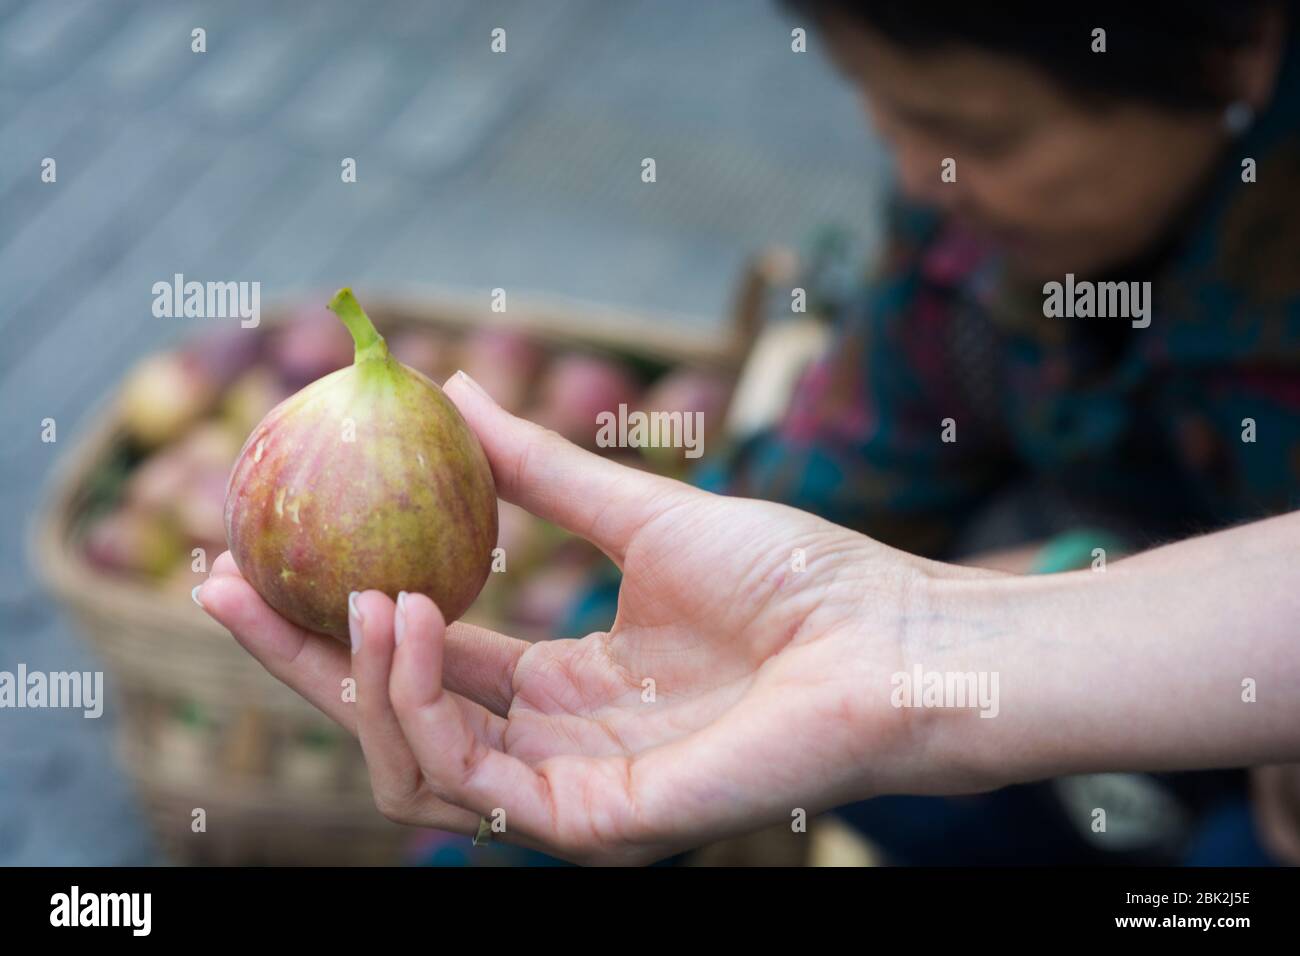 Frau Hand hält eine reife gewöhnliche Feige (Ficus carica) in einem Straßenobstmarkt, Chengdu, Sichuan, China Stockfoto